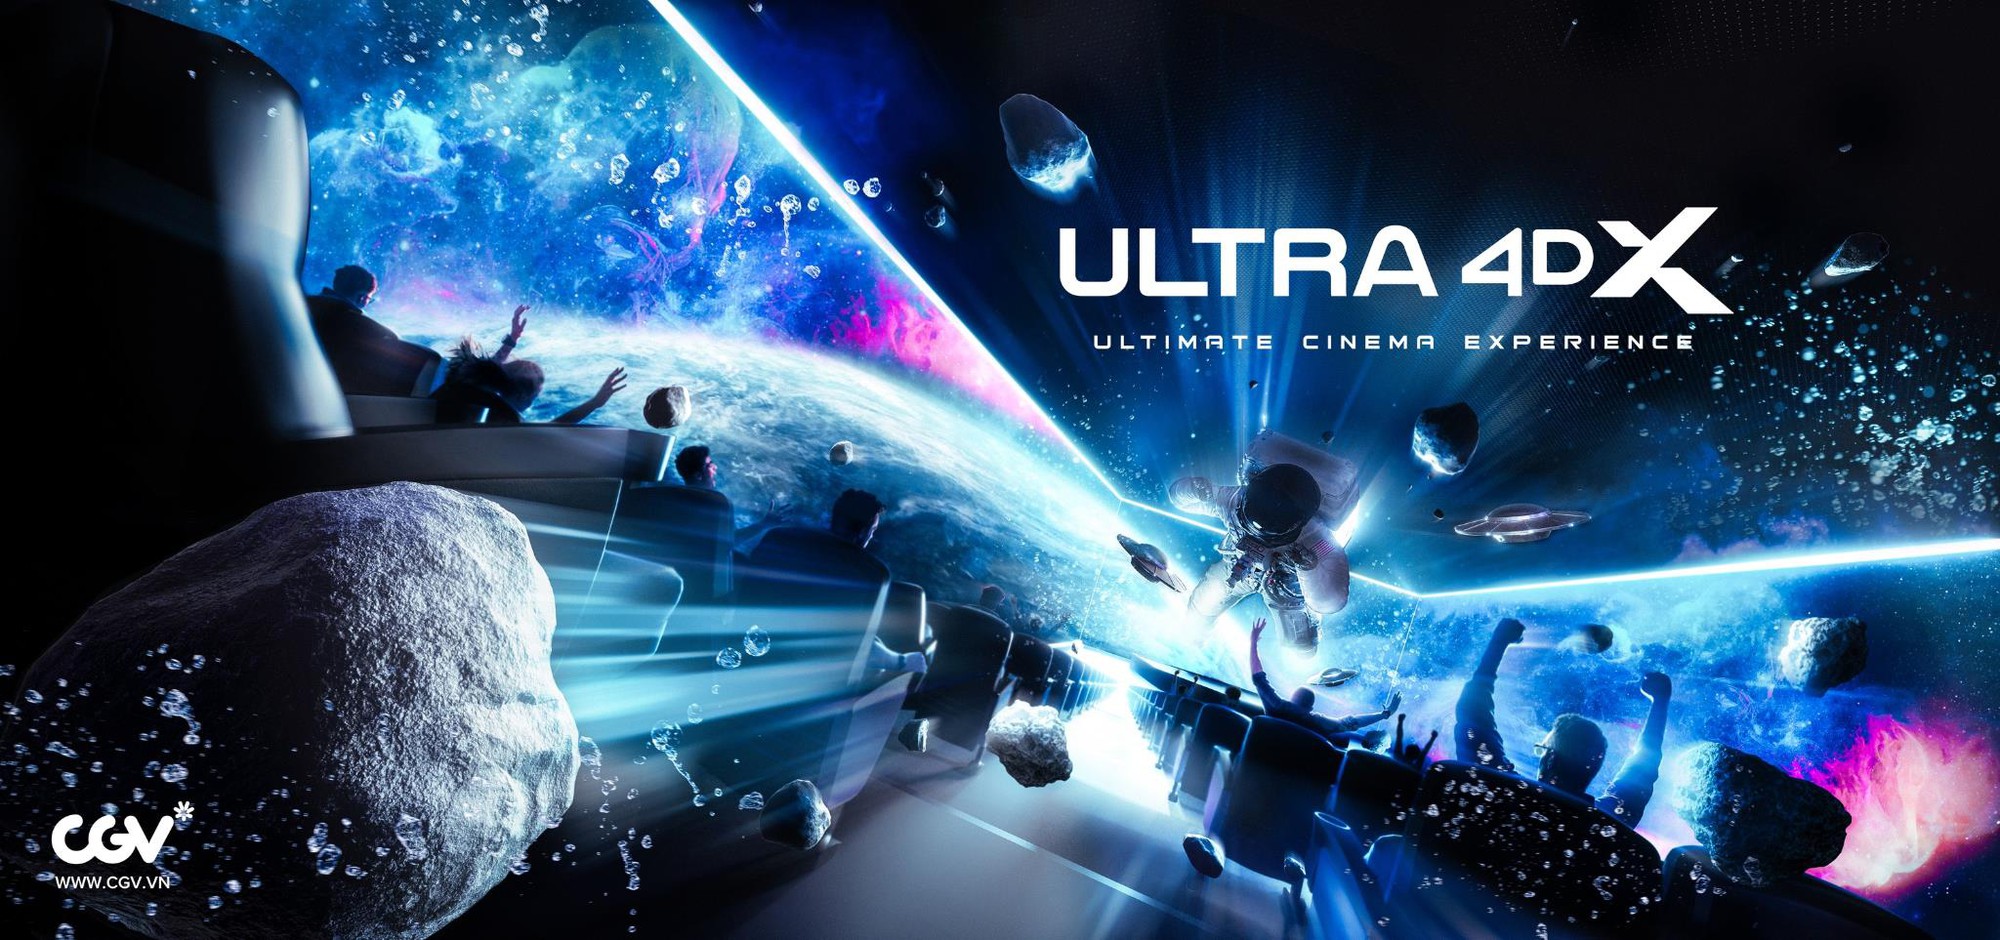 Công nghệ IMAX Laser và Ultra 4DX tại CGV có gì khiến các mọt phim mê mẩn - Ảnh 2.